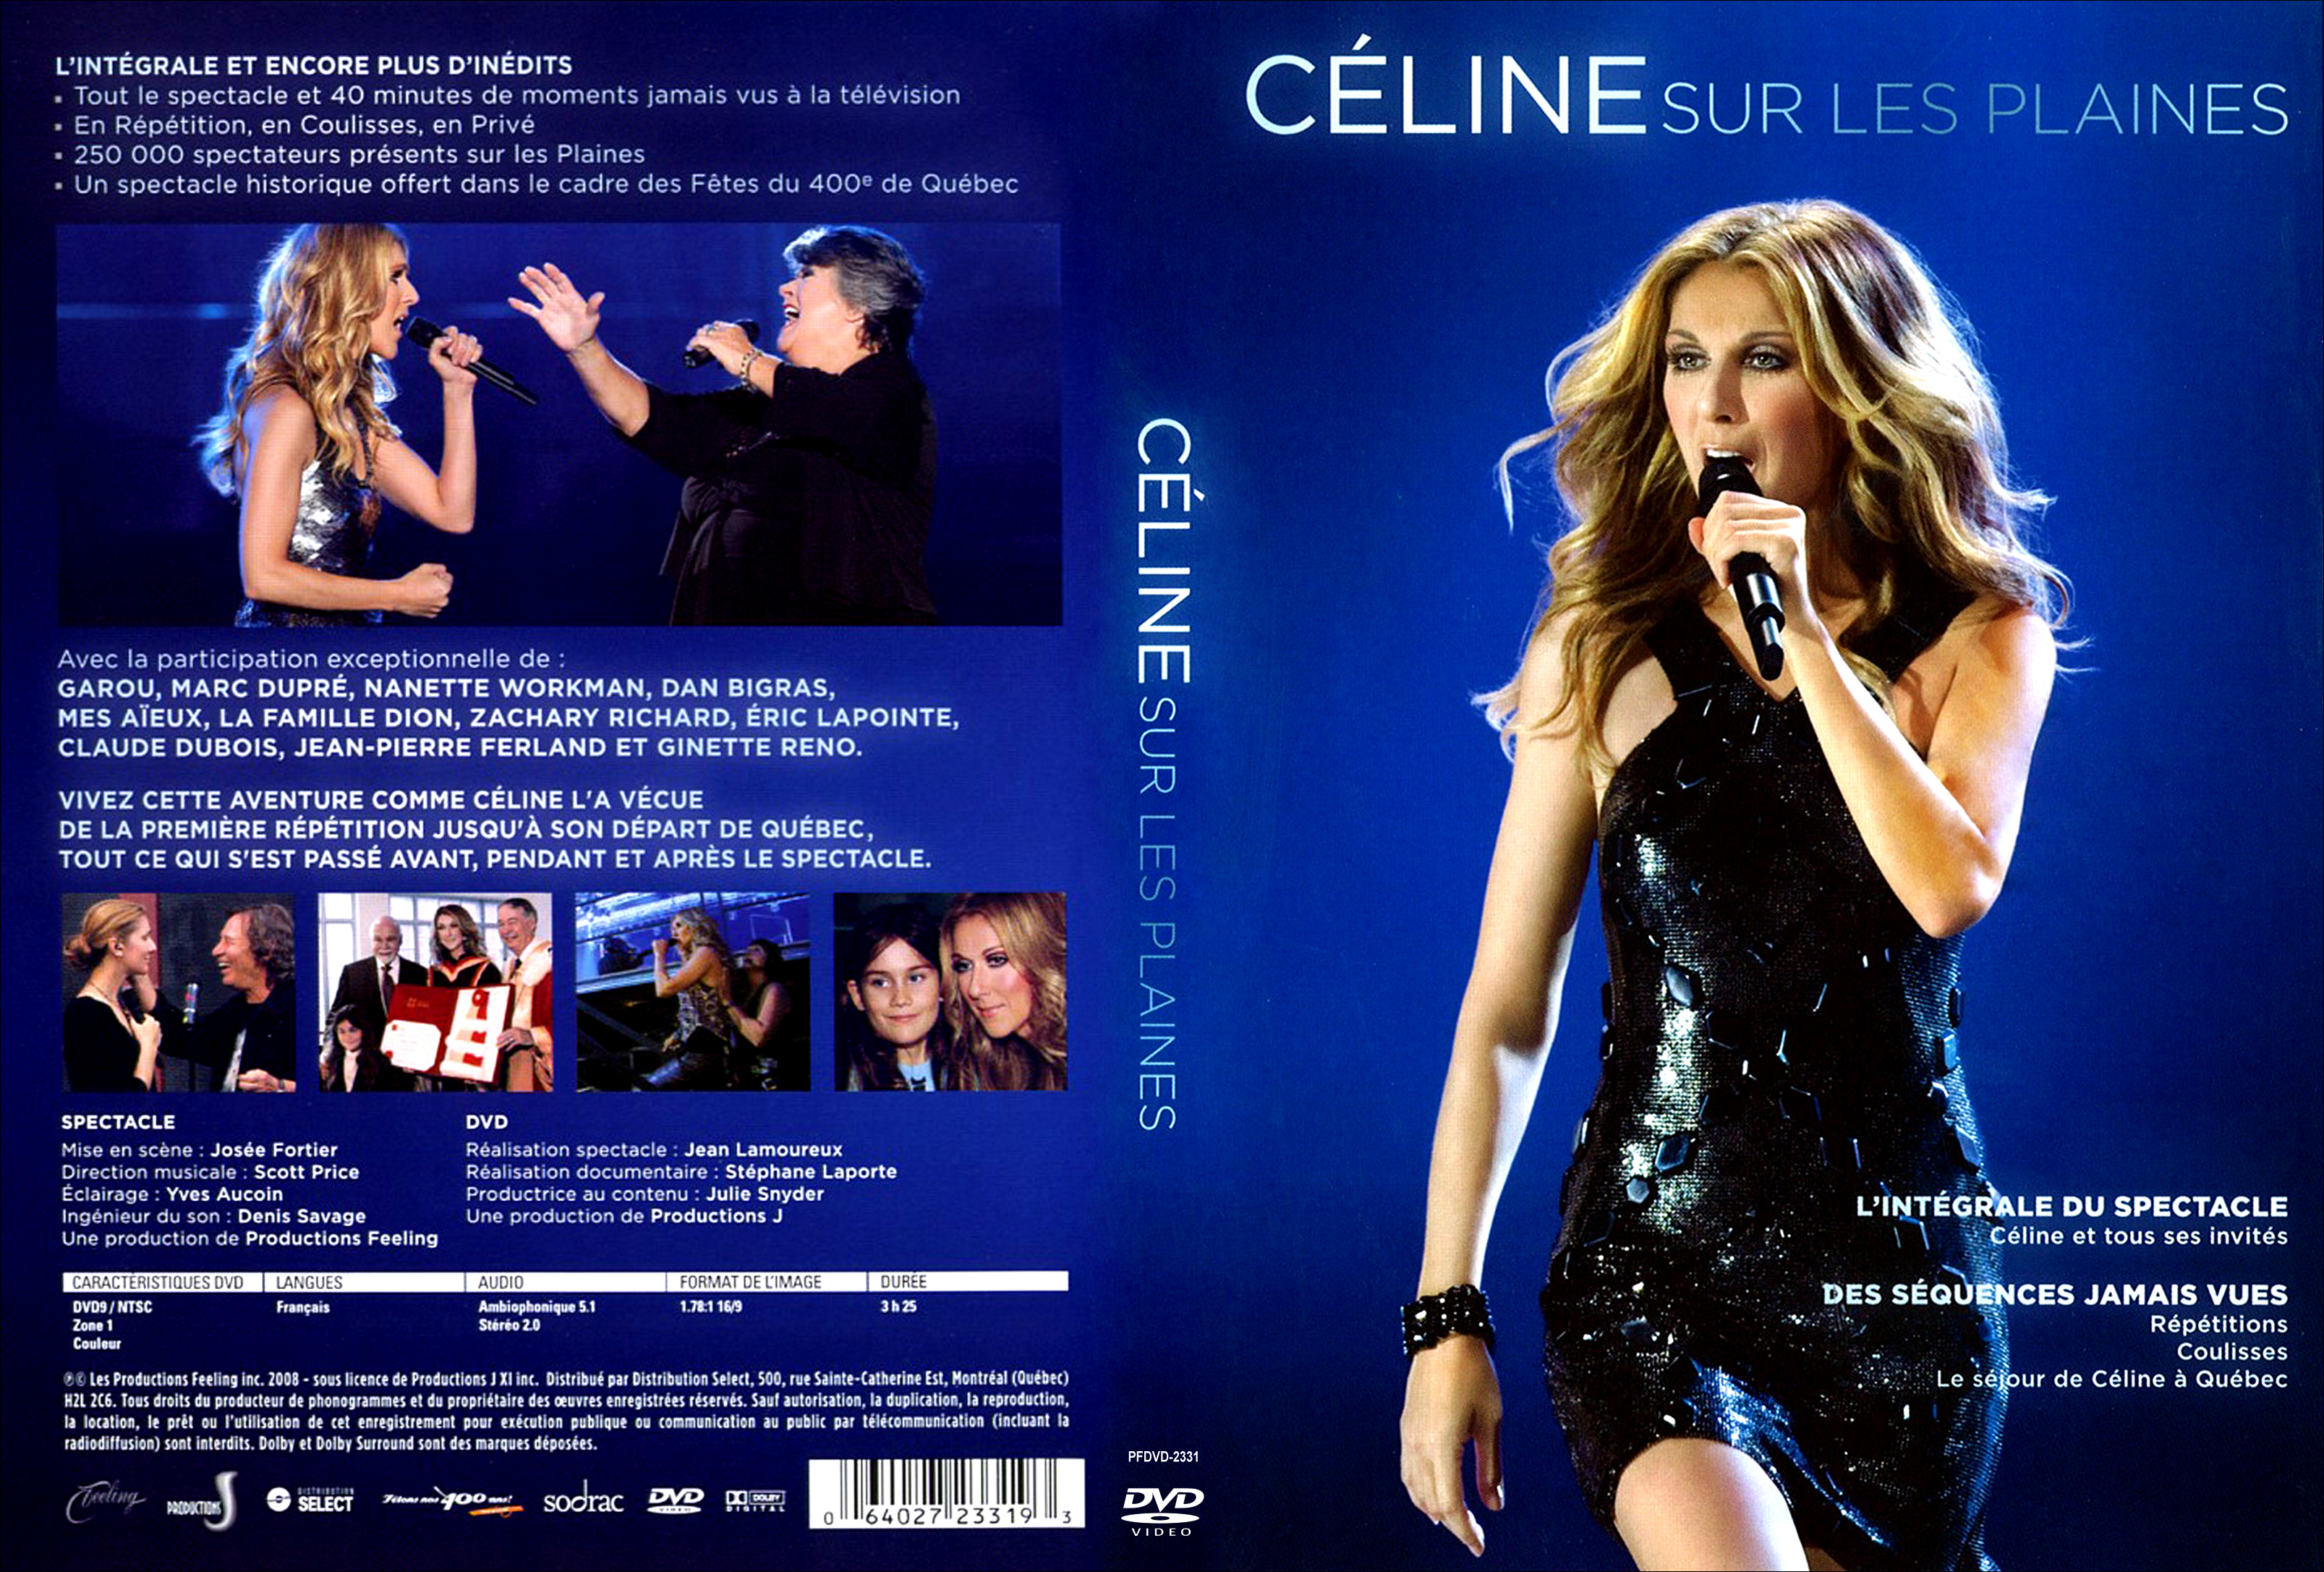 Jaquette DVD Celine Dion - Celine sur les plaines